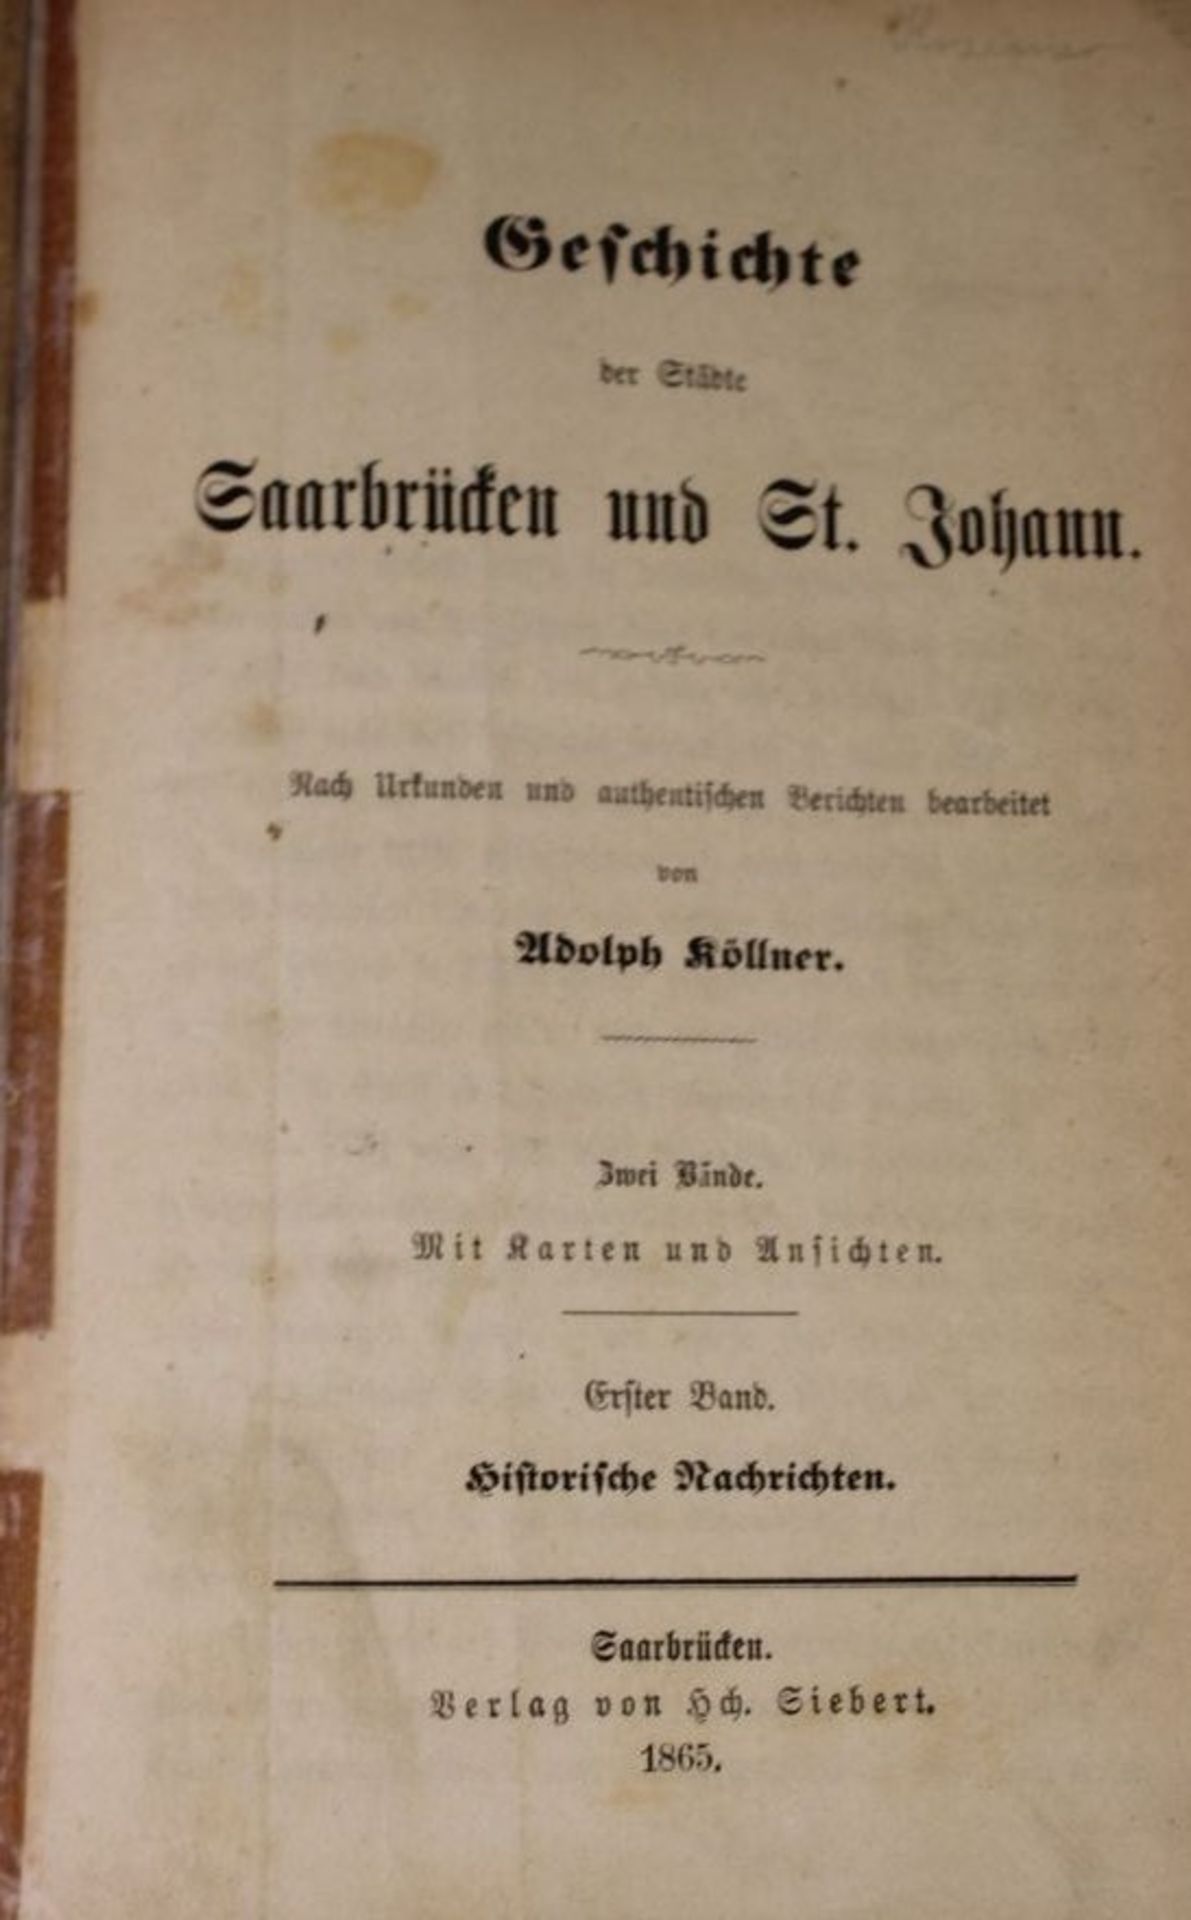 Adolph Köllner - Geschichte der Städte Saarbrücken uns St. Johann, 2 Bände, Saarbrücken 1865, - Bild 2 aus 5